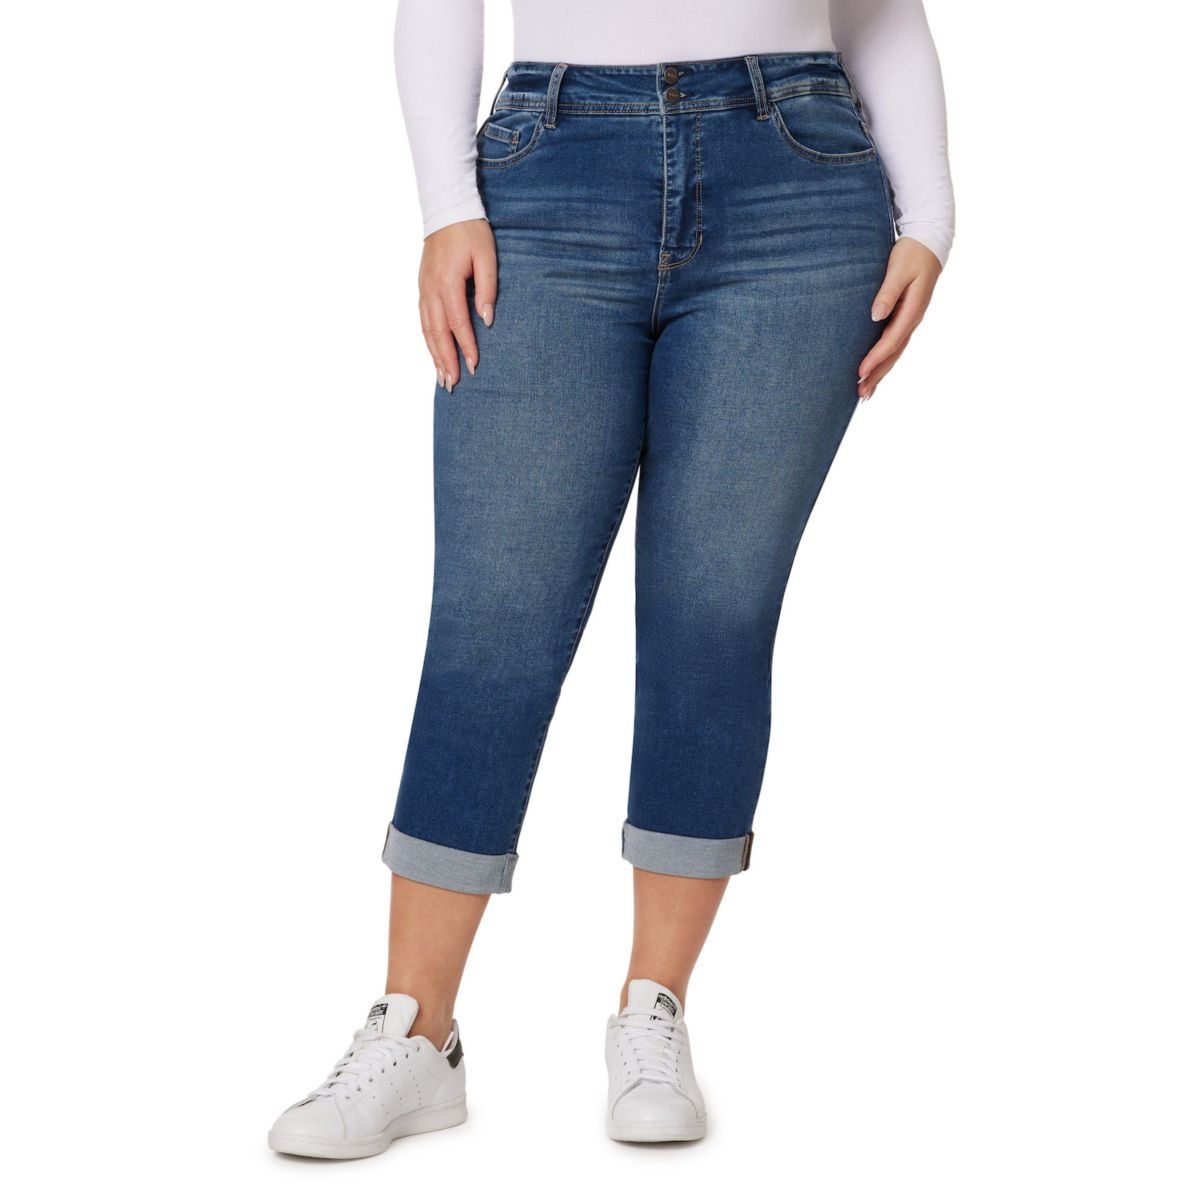 Мягкие ультраукороченные джинсы больших размеров WallFlower Insta для подростков с двойной подвернутой манжетой WallFlower